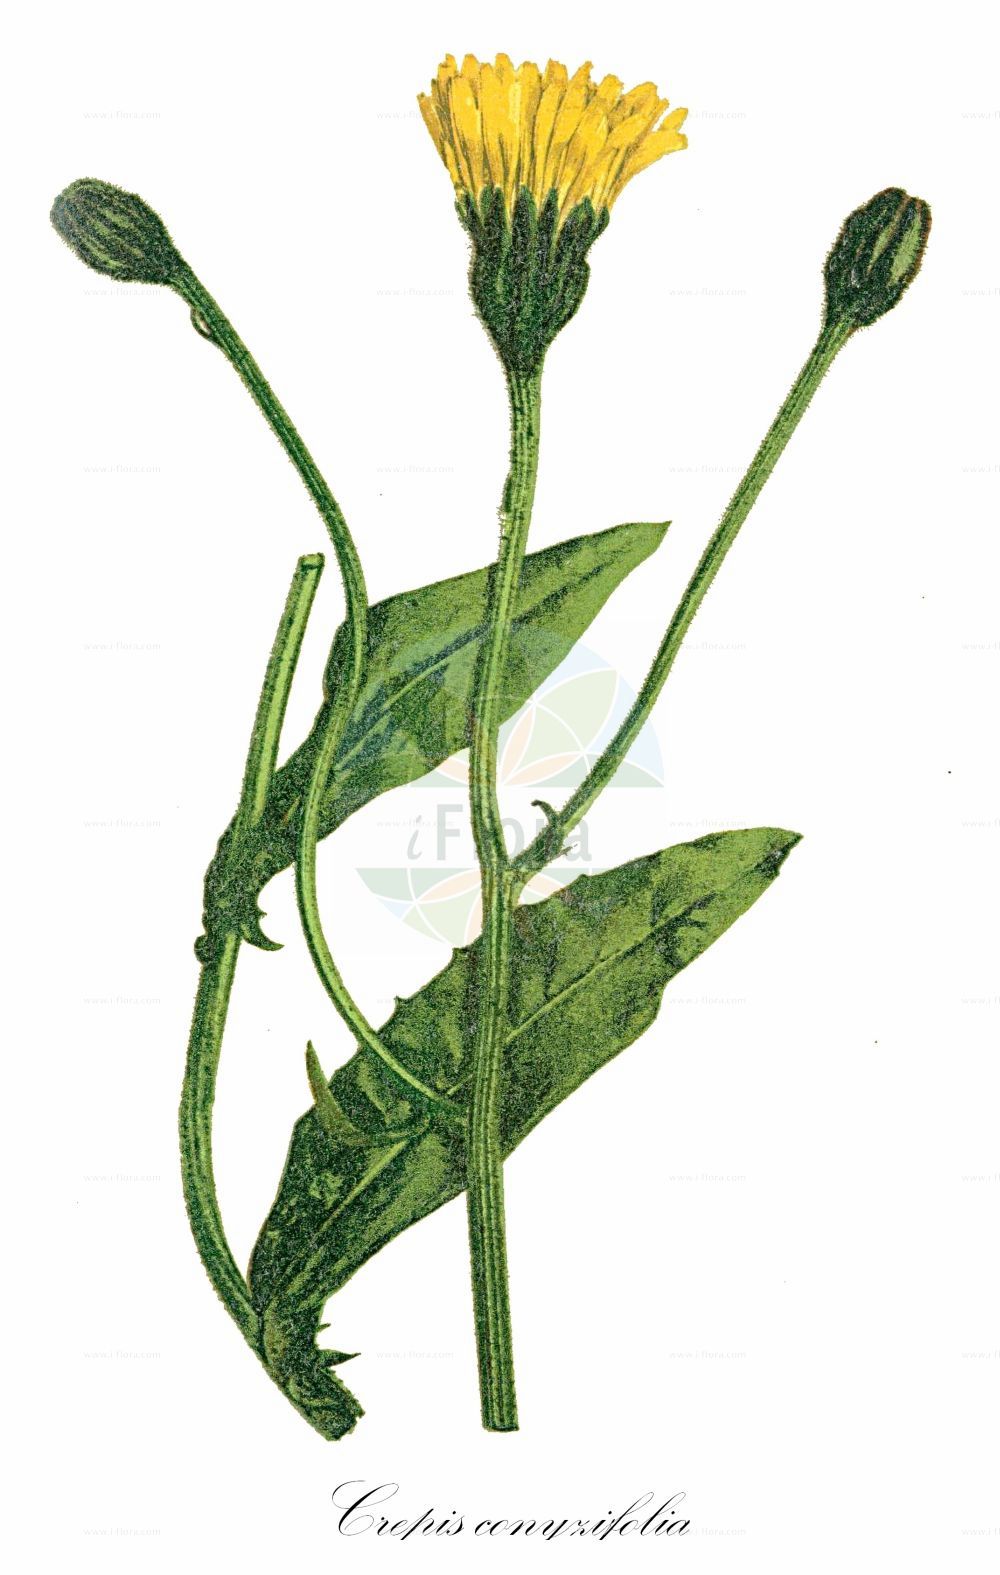 Historische Abbildung von Crepis conyzifolia (Großköpfiger Pippau - Fleabane Leaved Hakw's-beard). Das Bild zeigt Blatt, Bluete, Frucht und Same. ---- Historical Drawing of Crepis conyzifolia (Großköpfiger Pippau - Fleabane Leaved Hakw's-beard). The image is showing leaf, flower, fruit and seed.(Crepis conyzifolia,Großköpfiger Pippau,Fleabane Leaved Hakw's-beard,Crepis balcanica,Crepis conyzifolia,Crepis orbelica,Crepis trojanensis,Hieracium grandiflorum,Crepis grandiflora,Grosskoepfiger Pippau,Fleabane Leaved Hakw's-beard,Crepis,Pippau,Hawk's-beard,Asteraceae,Korbblütengewächse,Daisy family,Blatt,Bluete,Frucht,Same,leaf,flower,fruit,seed,Winkler (1900))